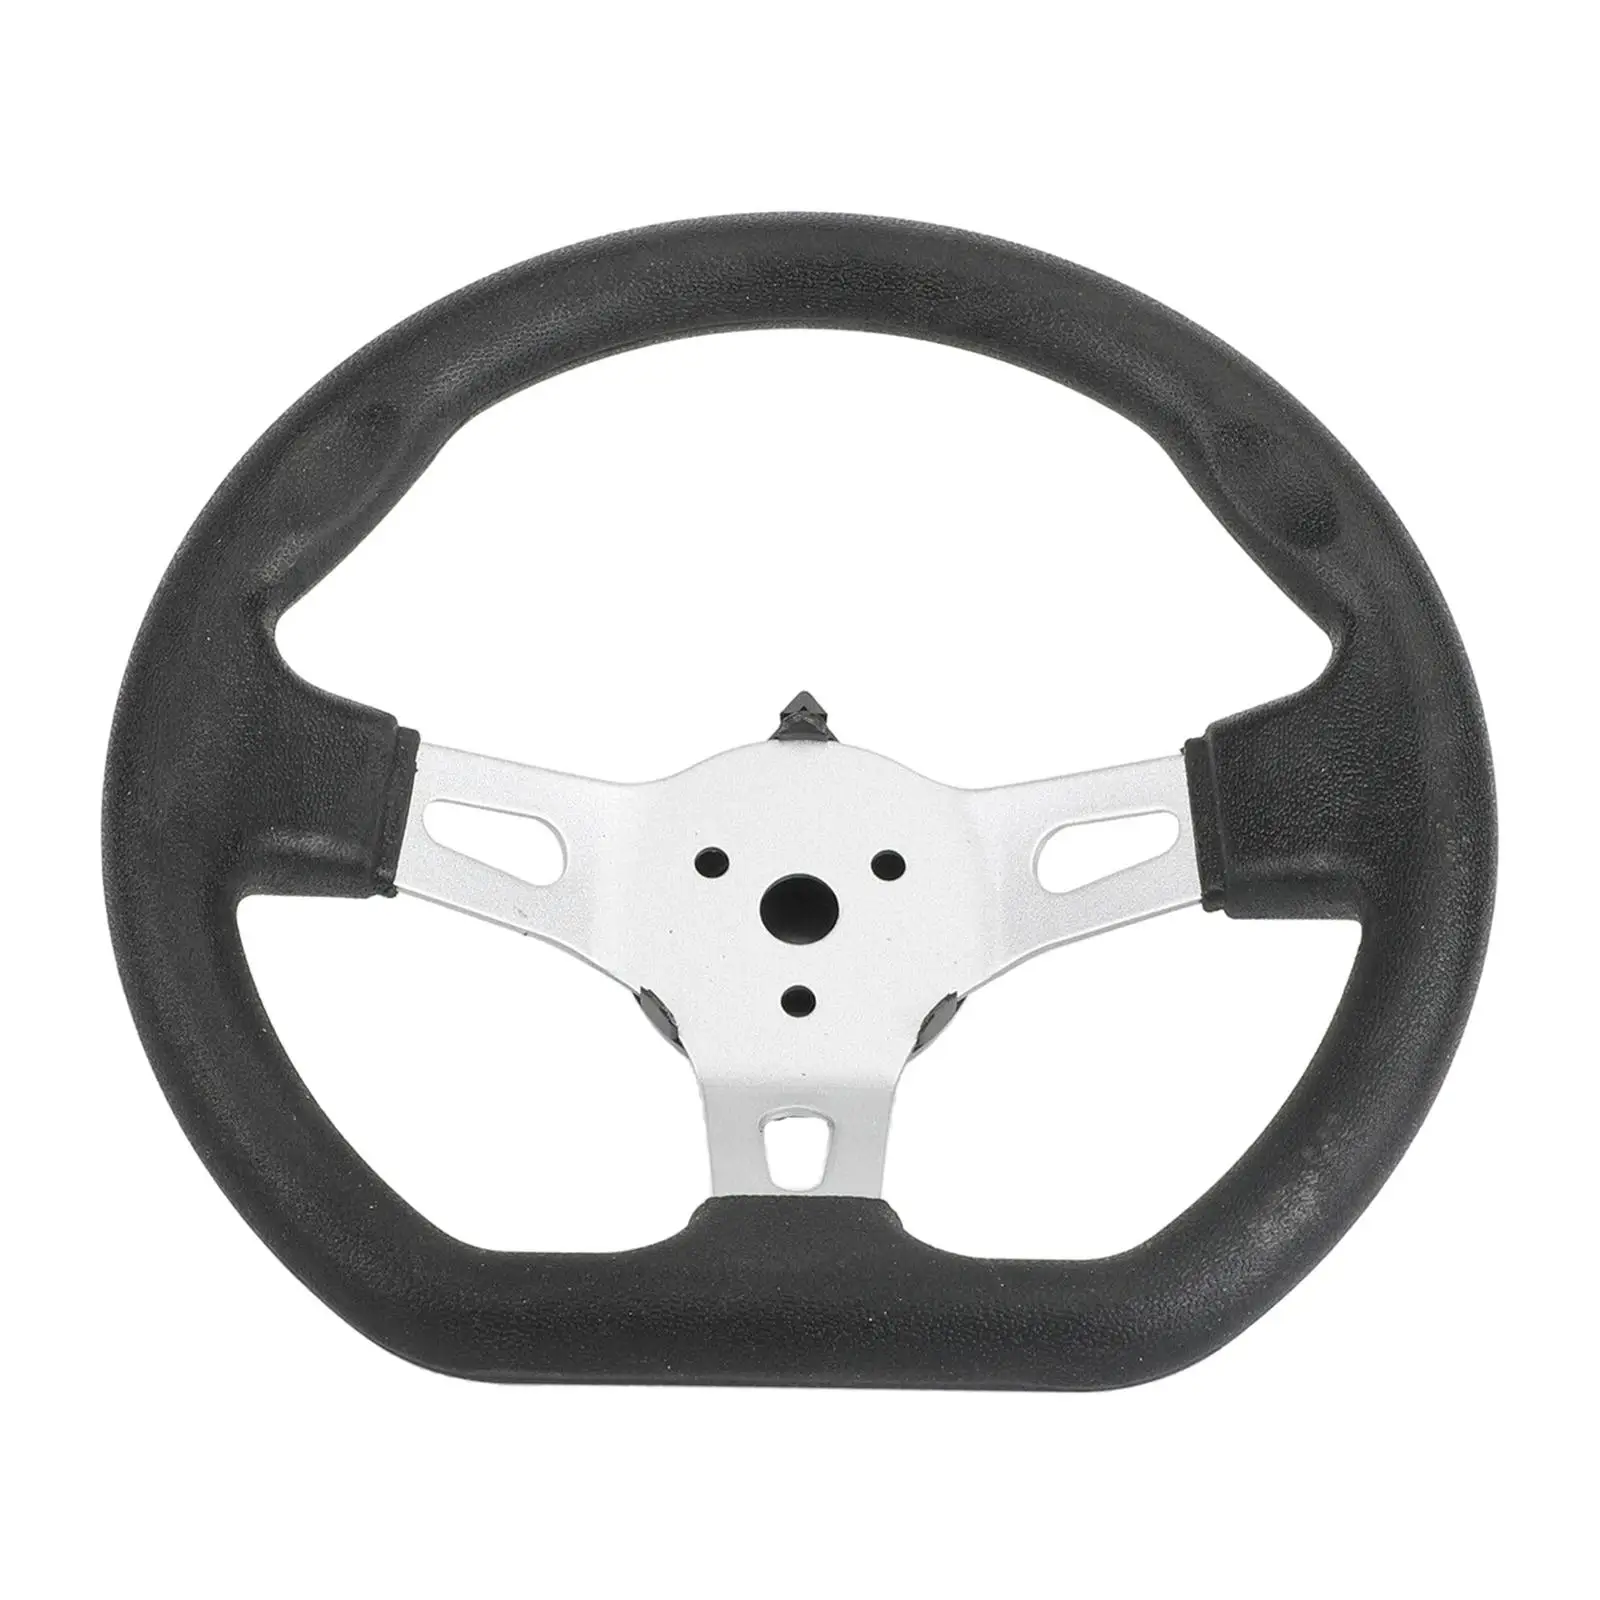 Universal 3 Spoke Steering Wheel for   Scooter Karting  - 270mm / 10.6 